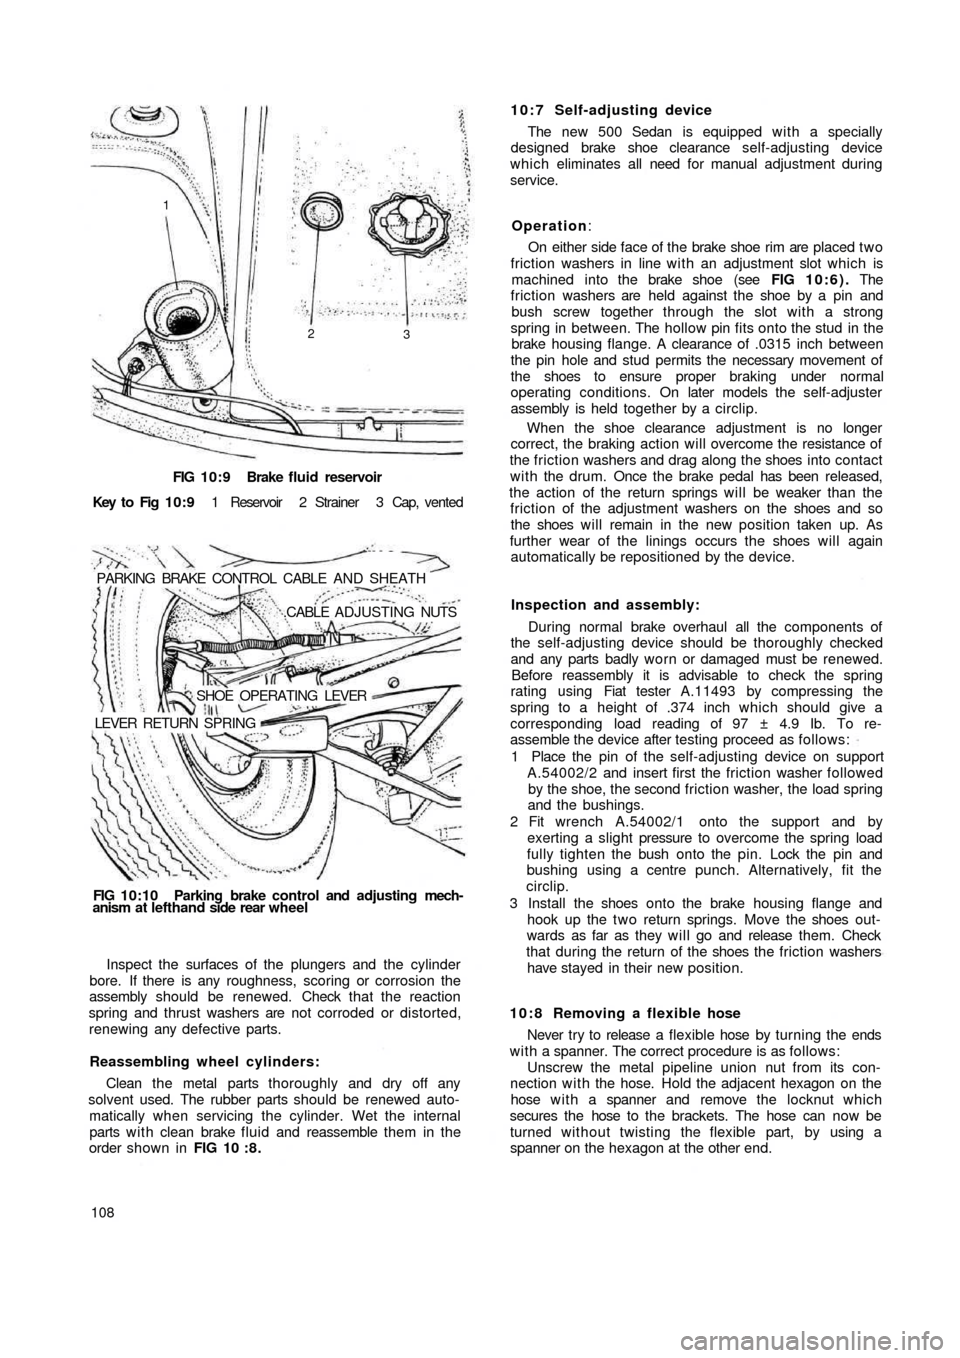 FIAT 500 1970 1.G Workshop Manual FIG 10:9 Brake  fluid reservoir
Key  to  Fig  1 0 : 9 1  Reservoir  2  Strainer  3  Cap,  vented
PARKING  BRAKE  CONTROL  CABLE  AND  SHEATH
.CABLE  ADJUSTING NUTS
SHOE  OPERATING  LEVER
LEVER  RETURN